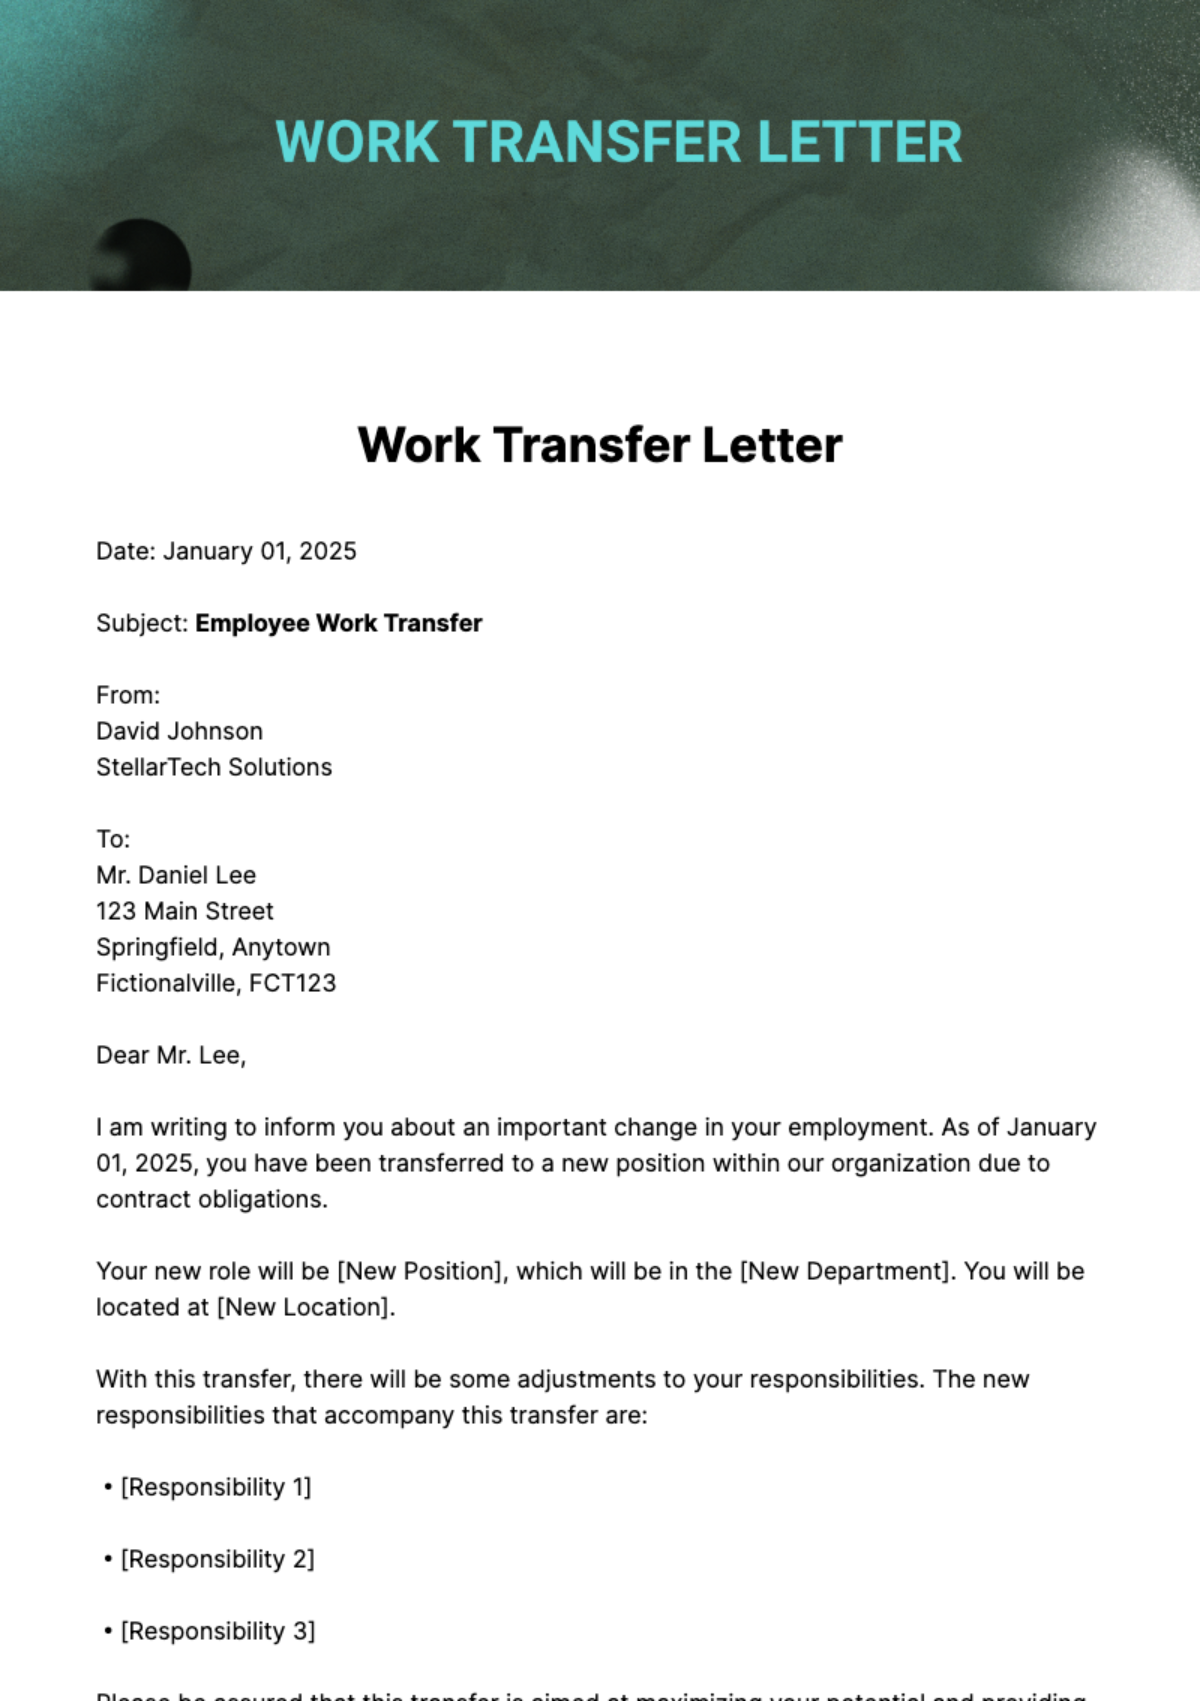 Work Transfer Letter Template